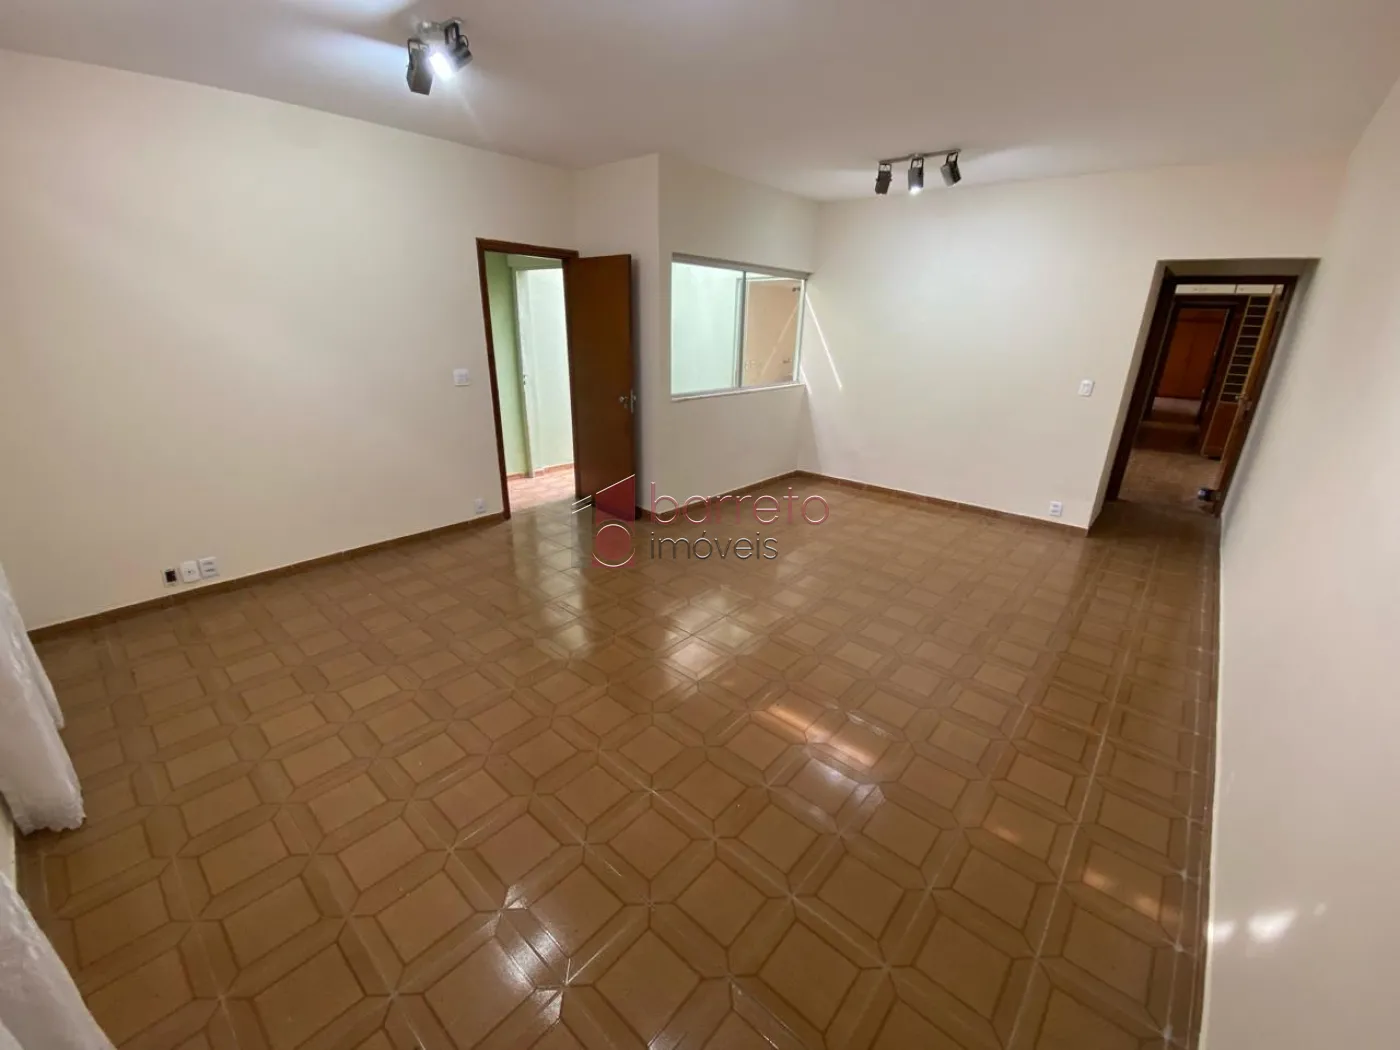 Comprar Casa / Térrea em Jundiaí R$ 668.000,00 - Foto 2